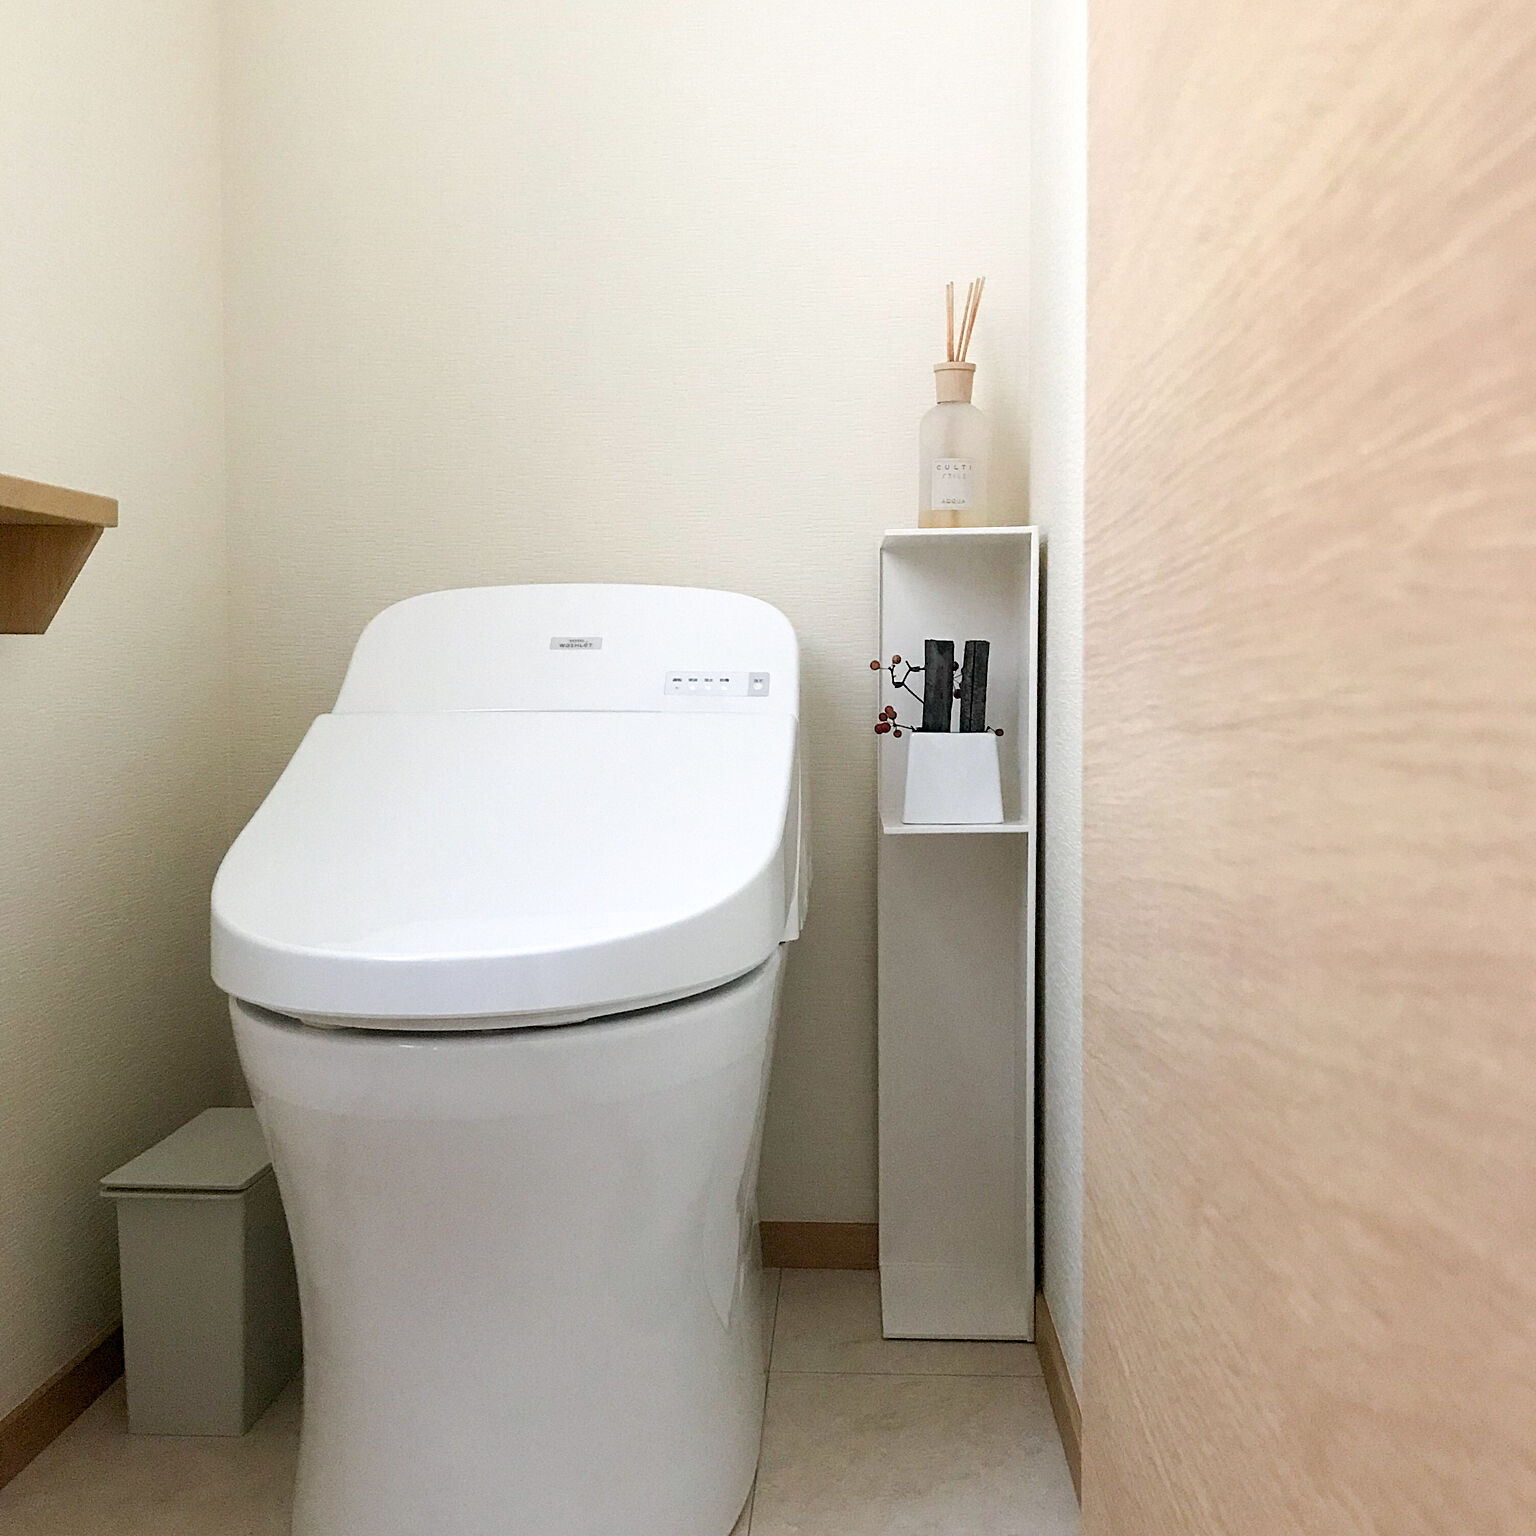 トイレのデッドスペース賢く活用！ユーザーさんおすすめアイテムとDIY実例